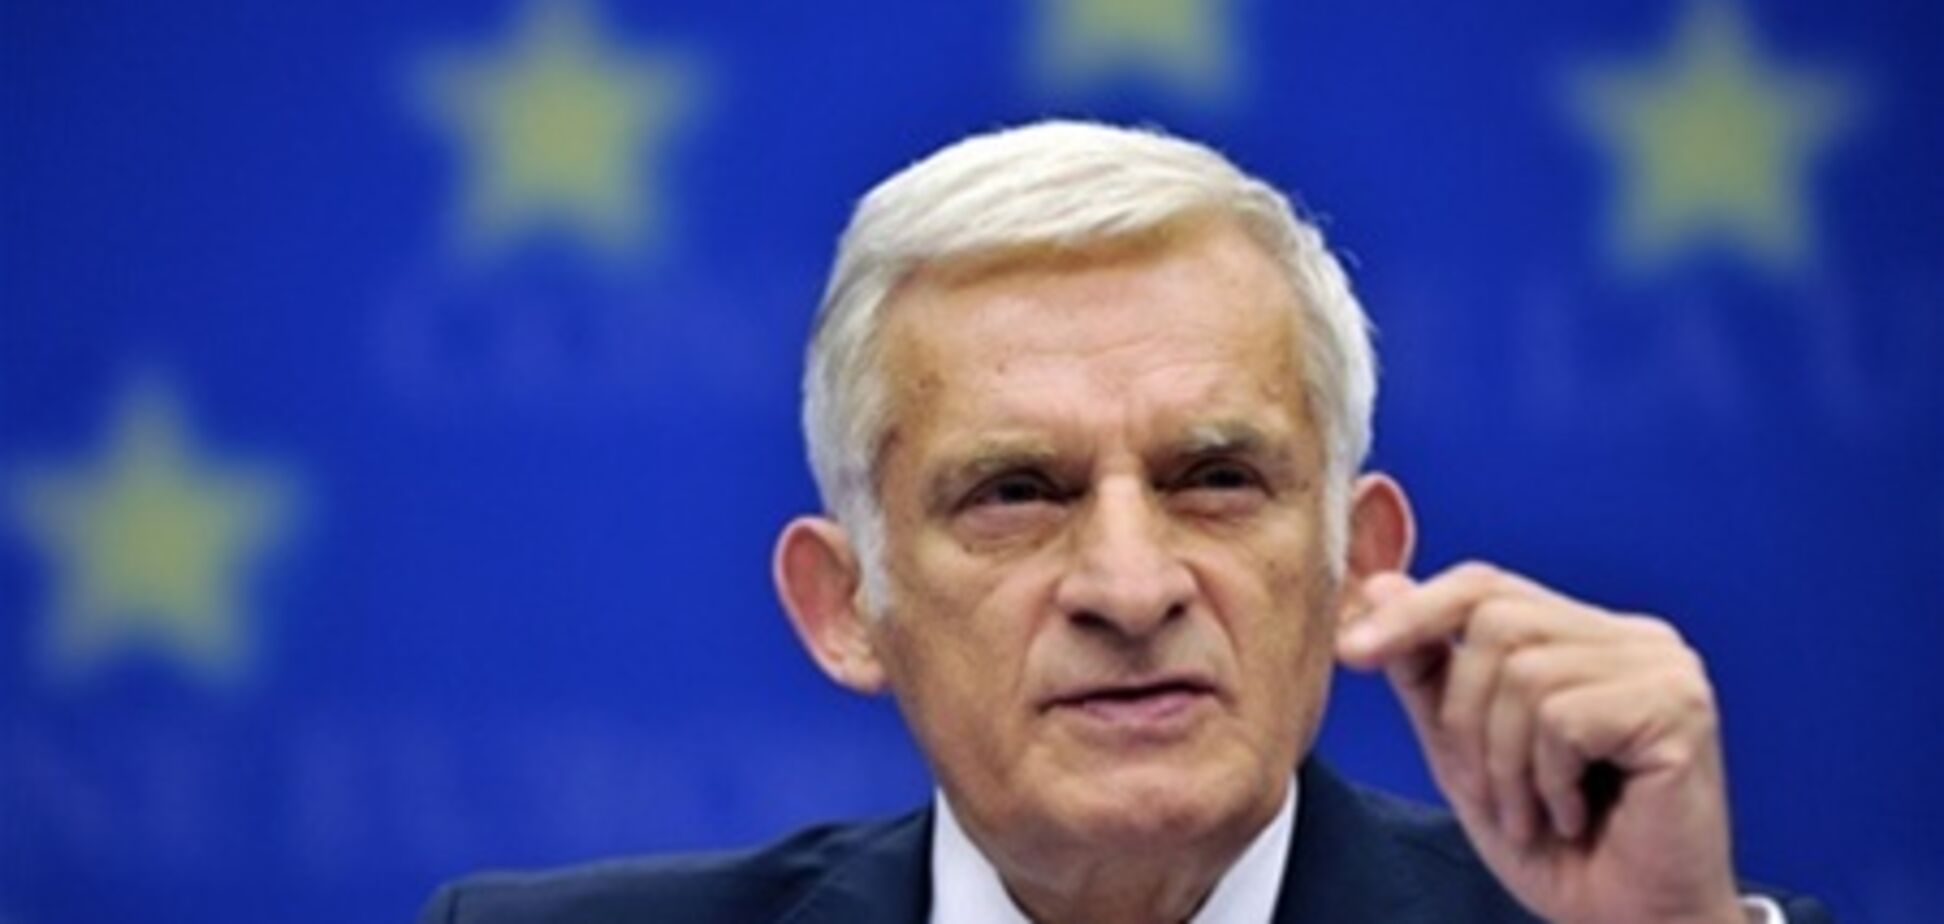 ЄС поки не планує санкцій проти українських чиновників - Бузек